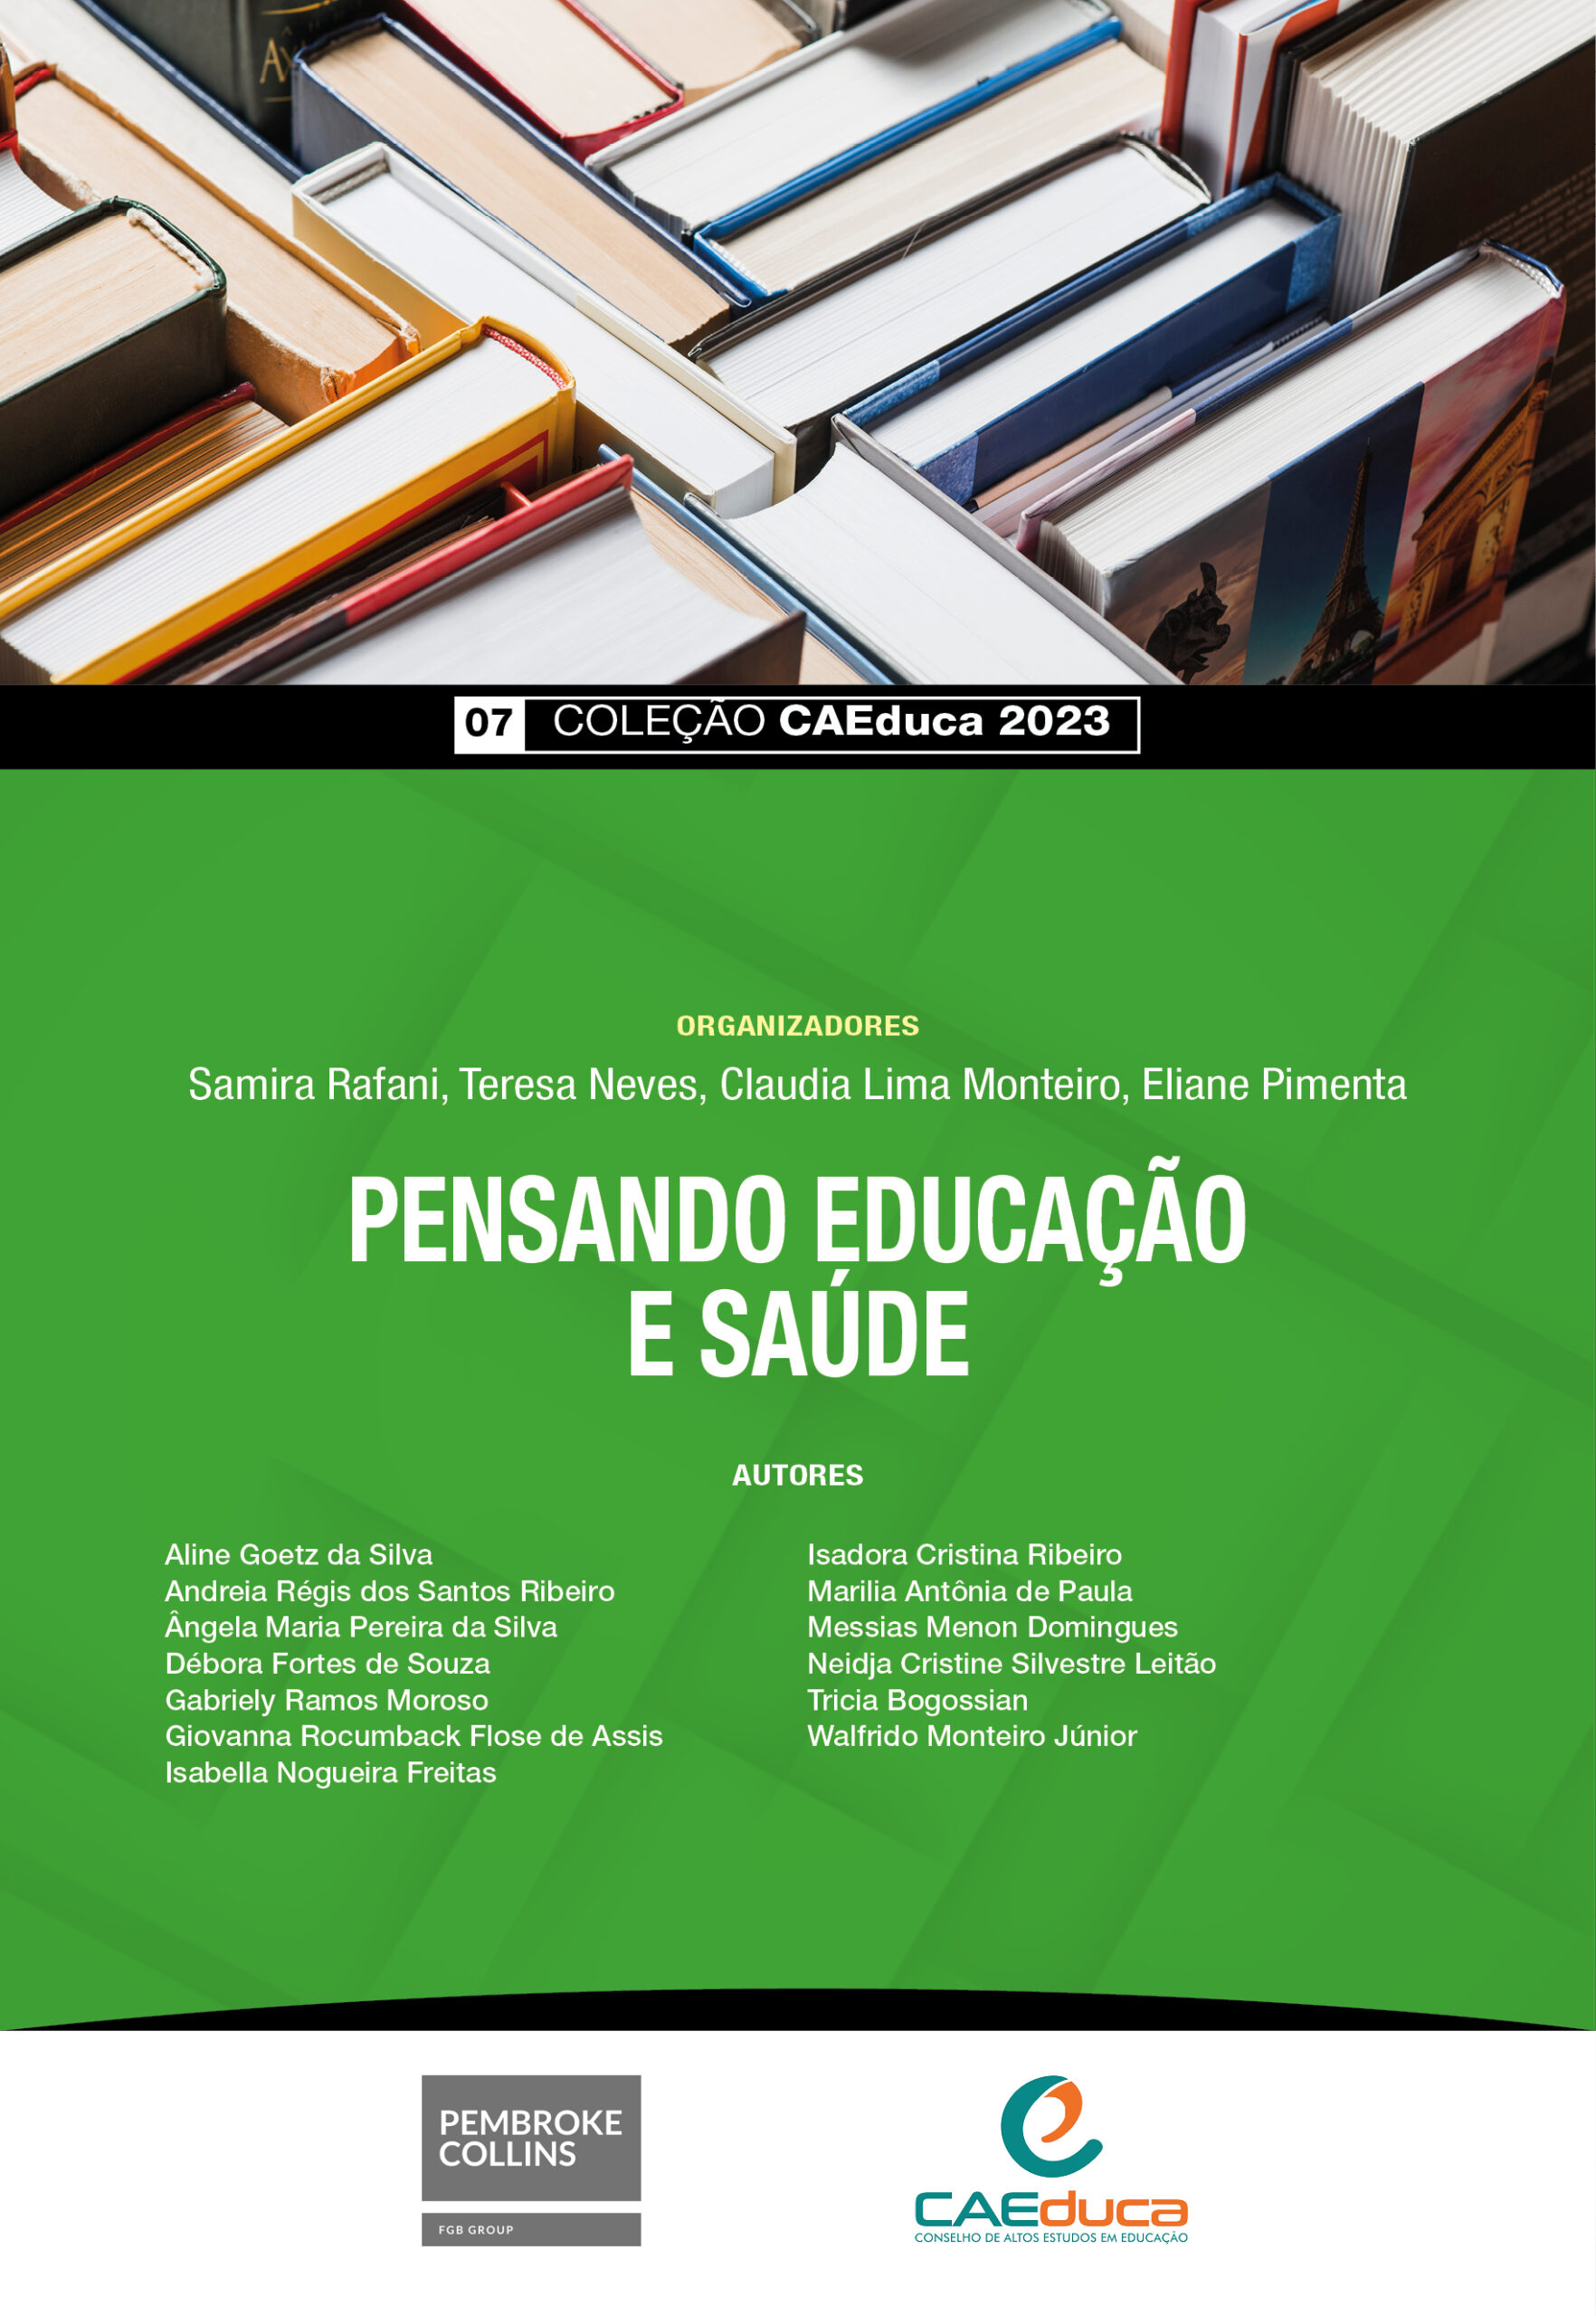 07_Capa_CAEDUCA 2023_PENSANDO EDUCAÇÃO E SAÚDE